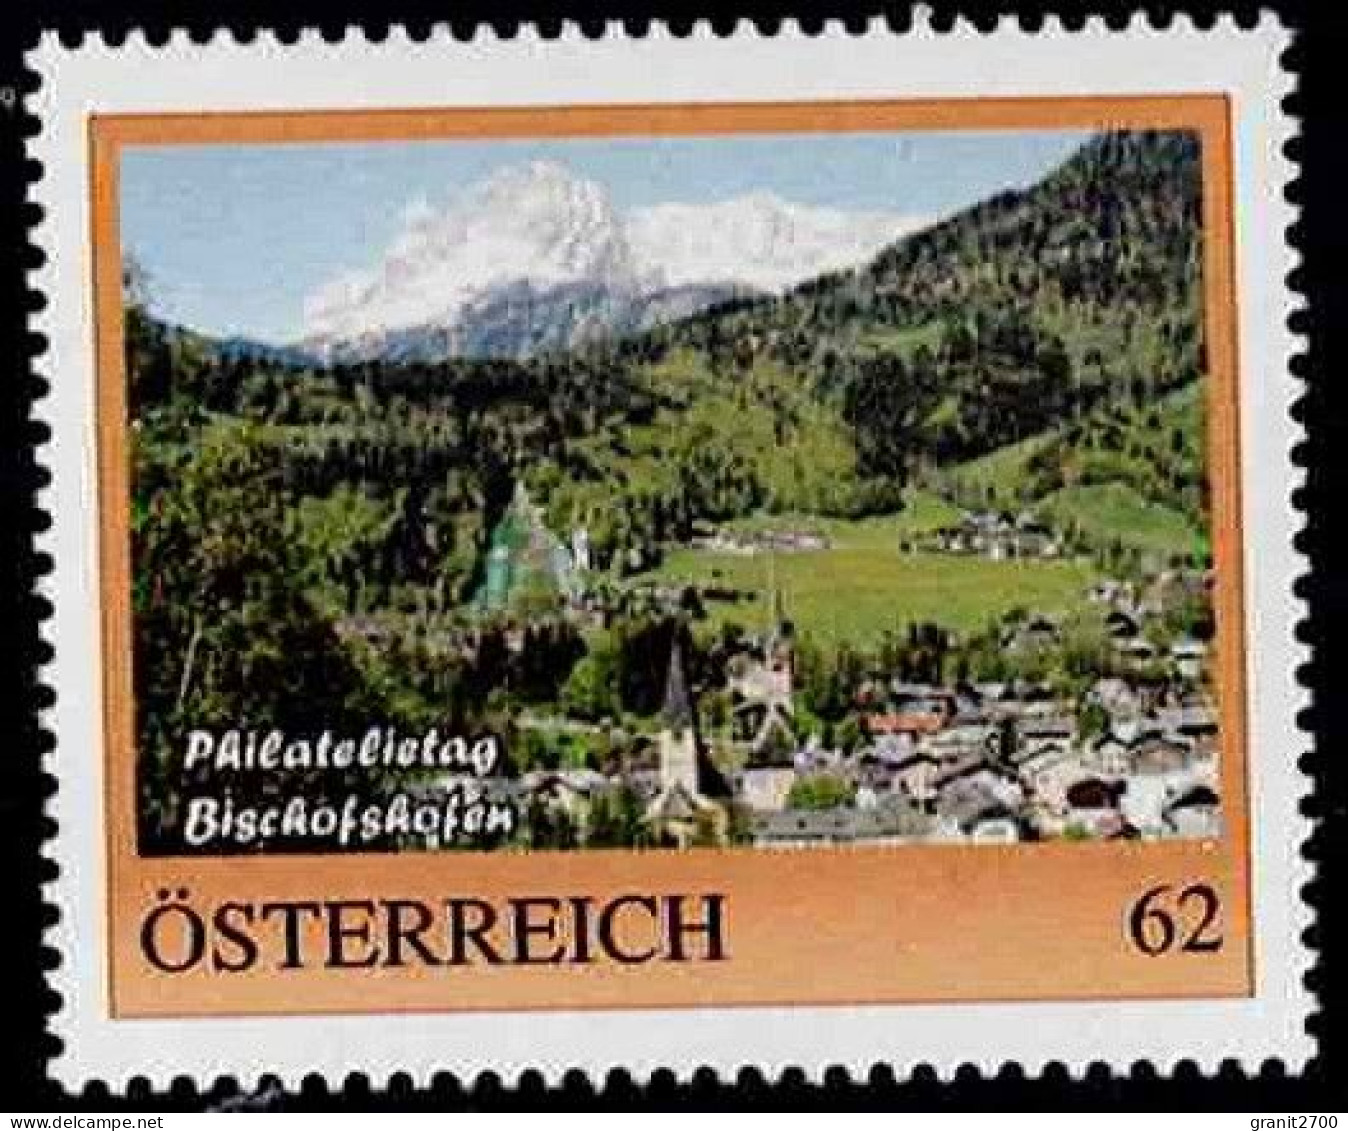 PM Philatelietag Bischofshofen  Ex Bogen Nr. 8108803 Postfrisch - Persoonlijke Postzegels